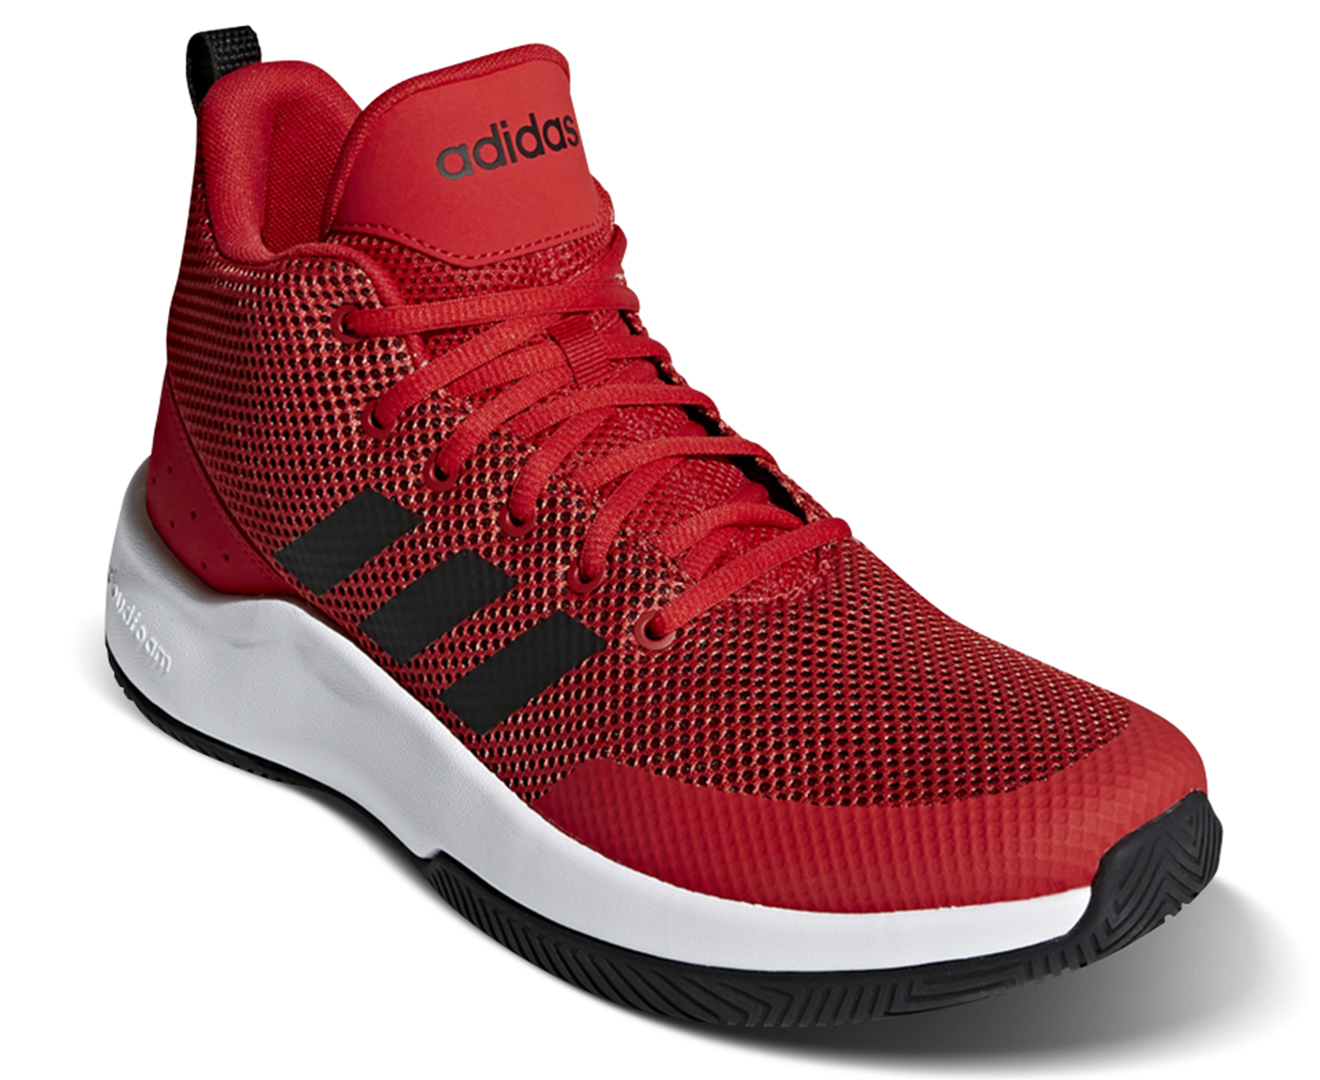 Adidas Men's SPD End2End Basketball Shoe - Scarlet/Core Black/White ...